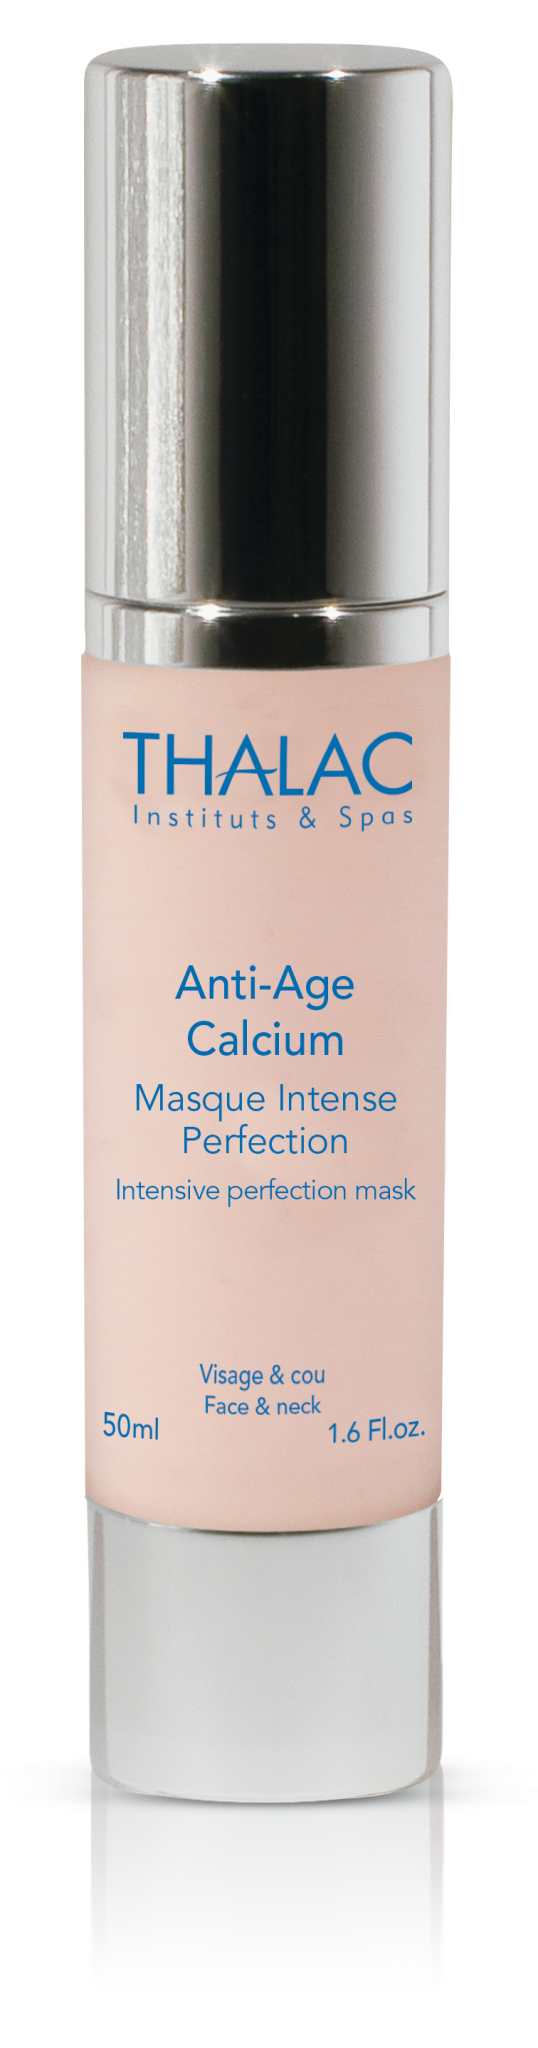 Anti Age Calcium Masque